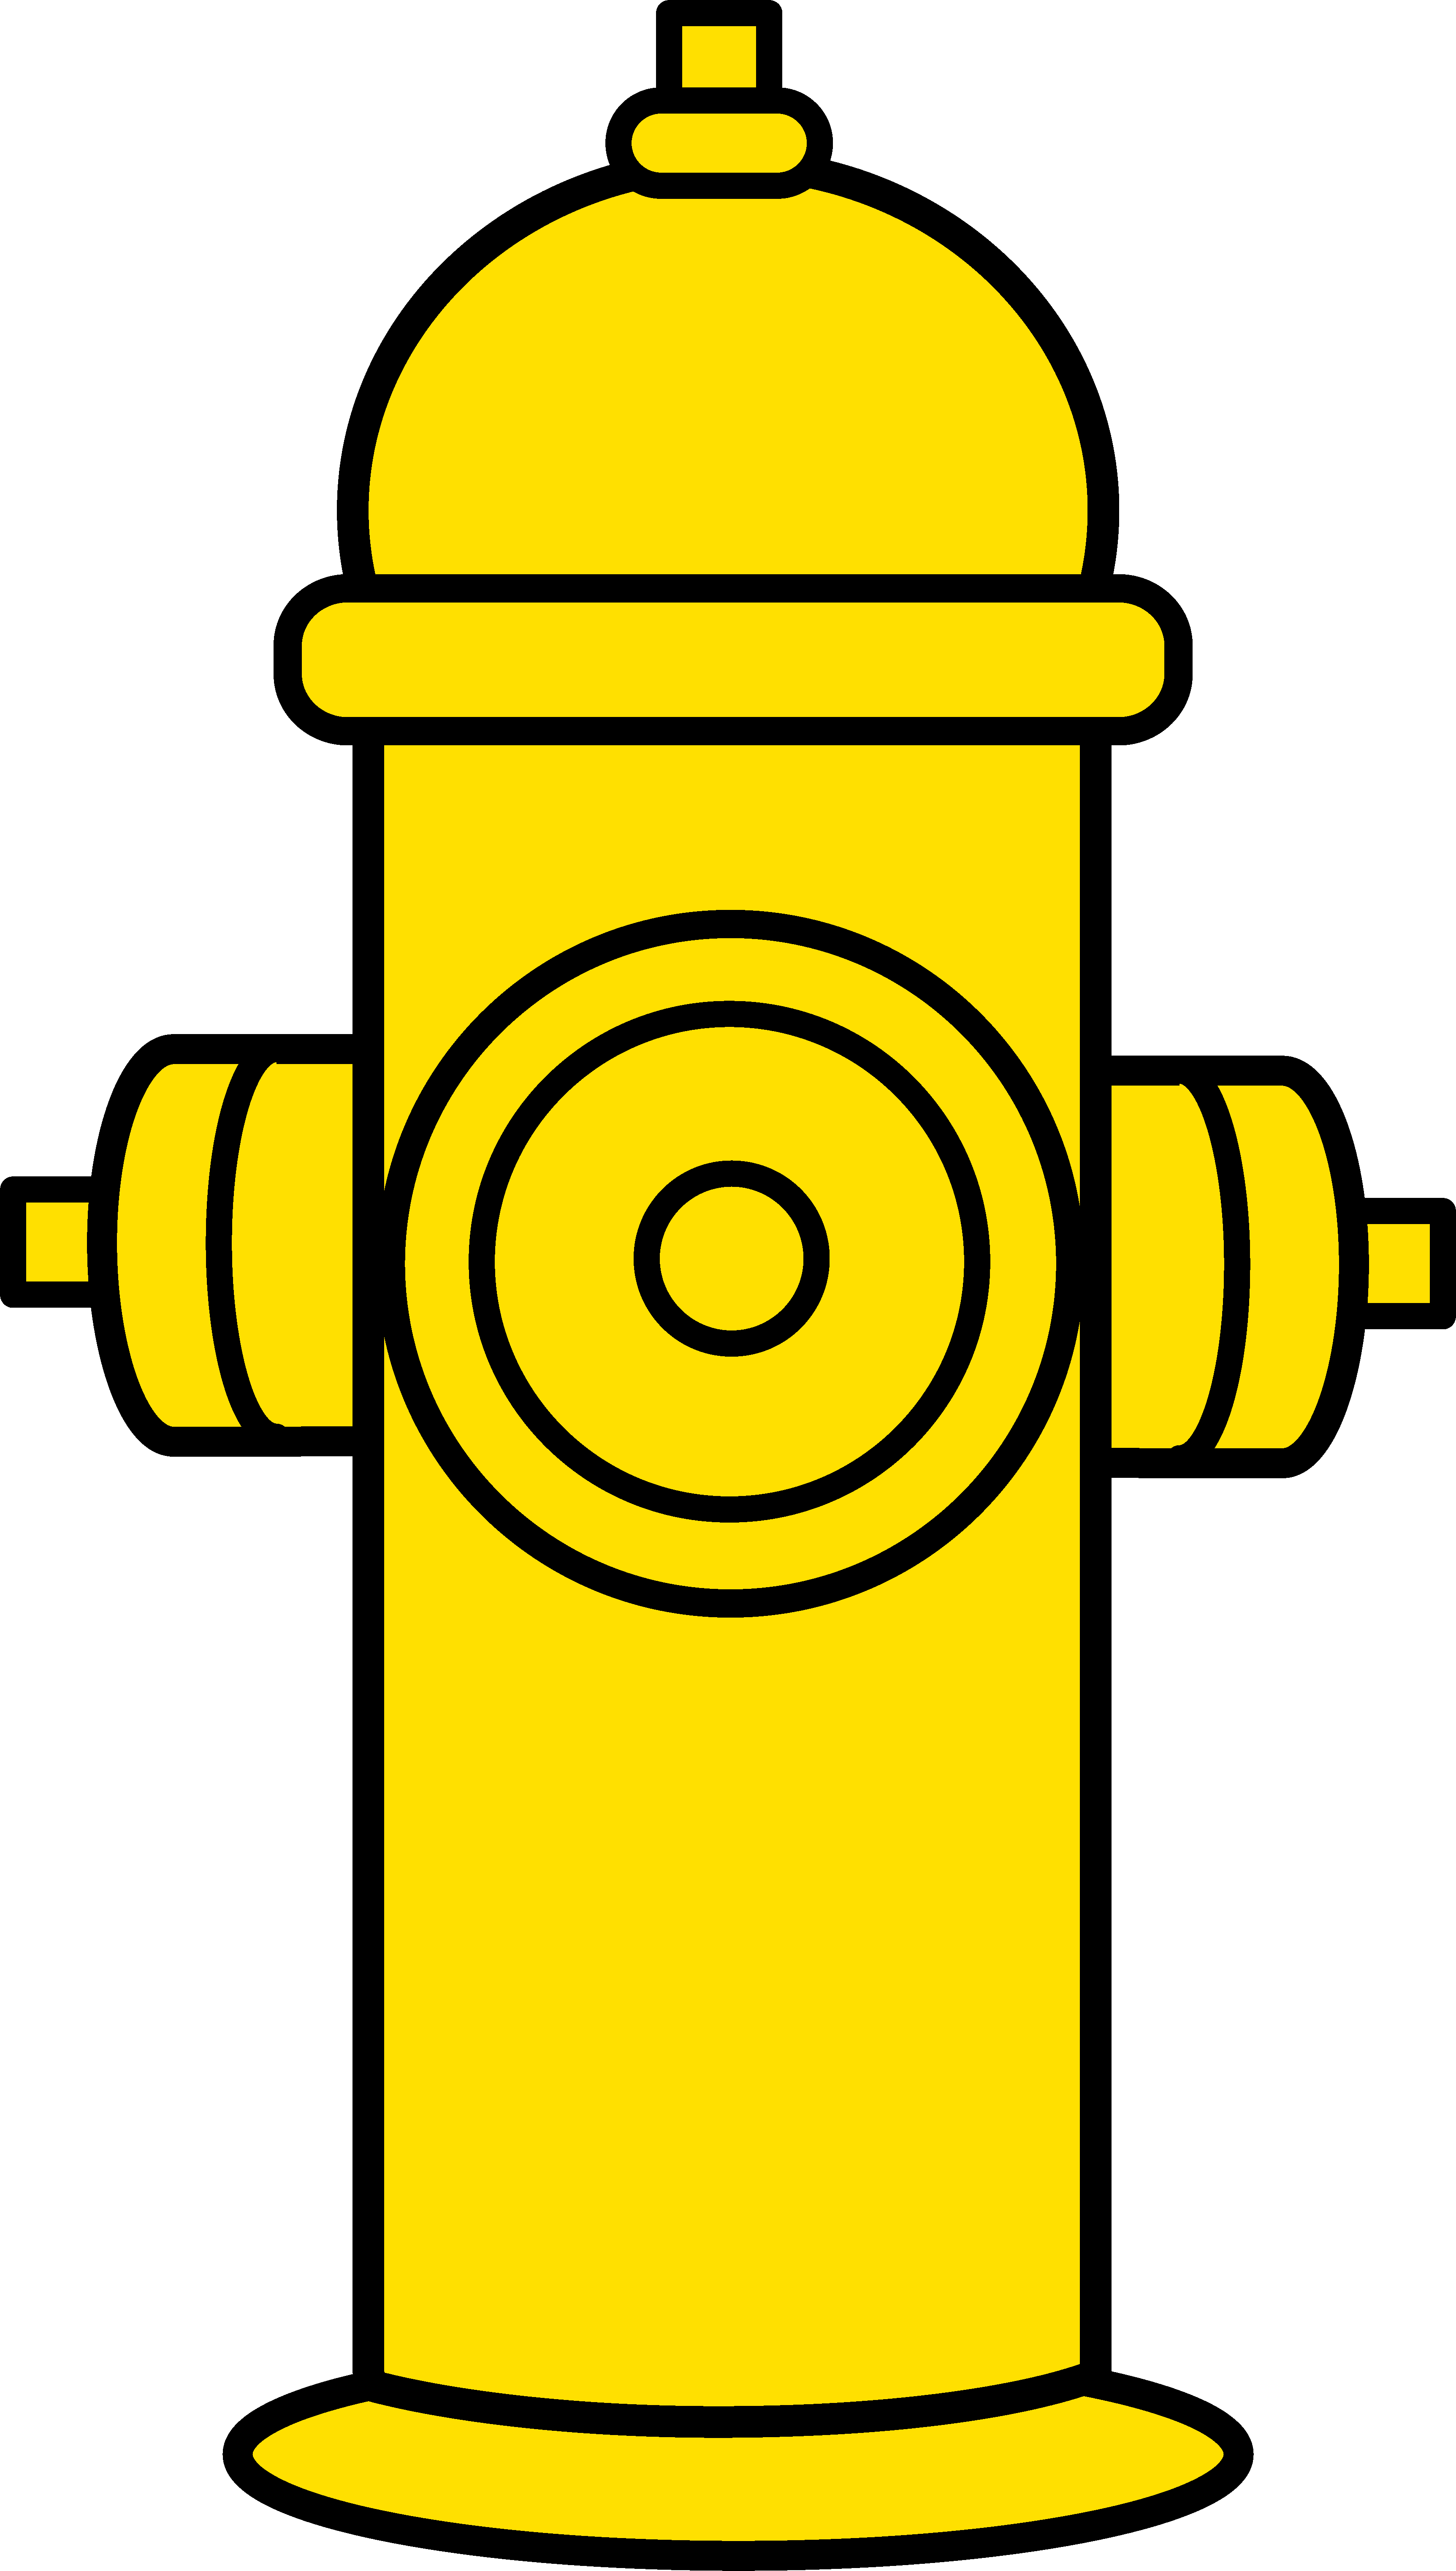 Fire hydrant clip art